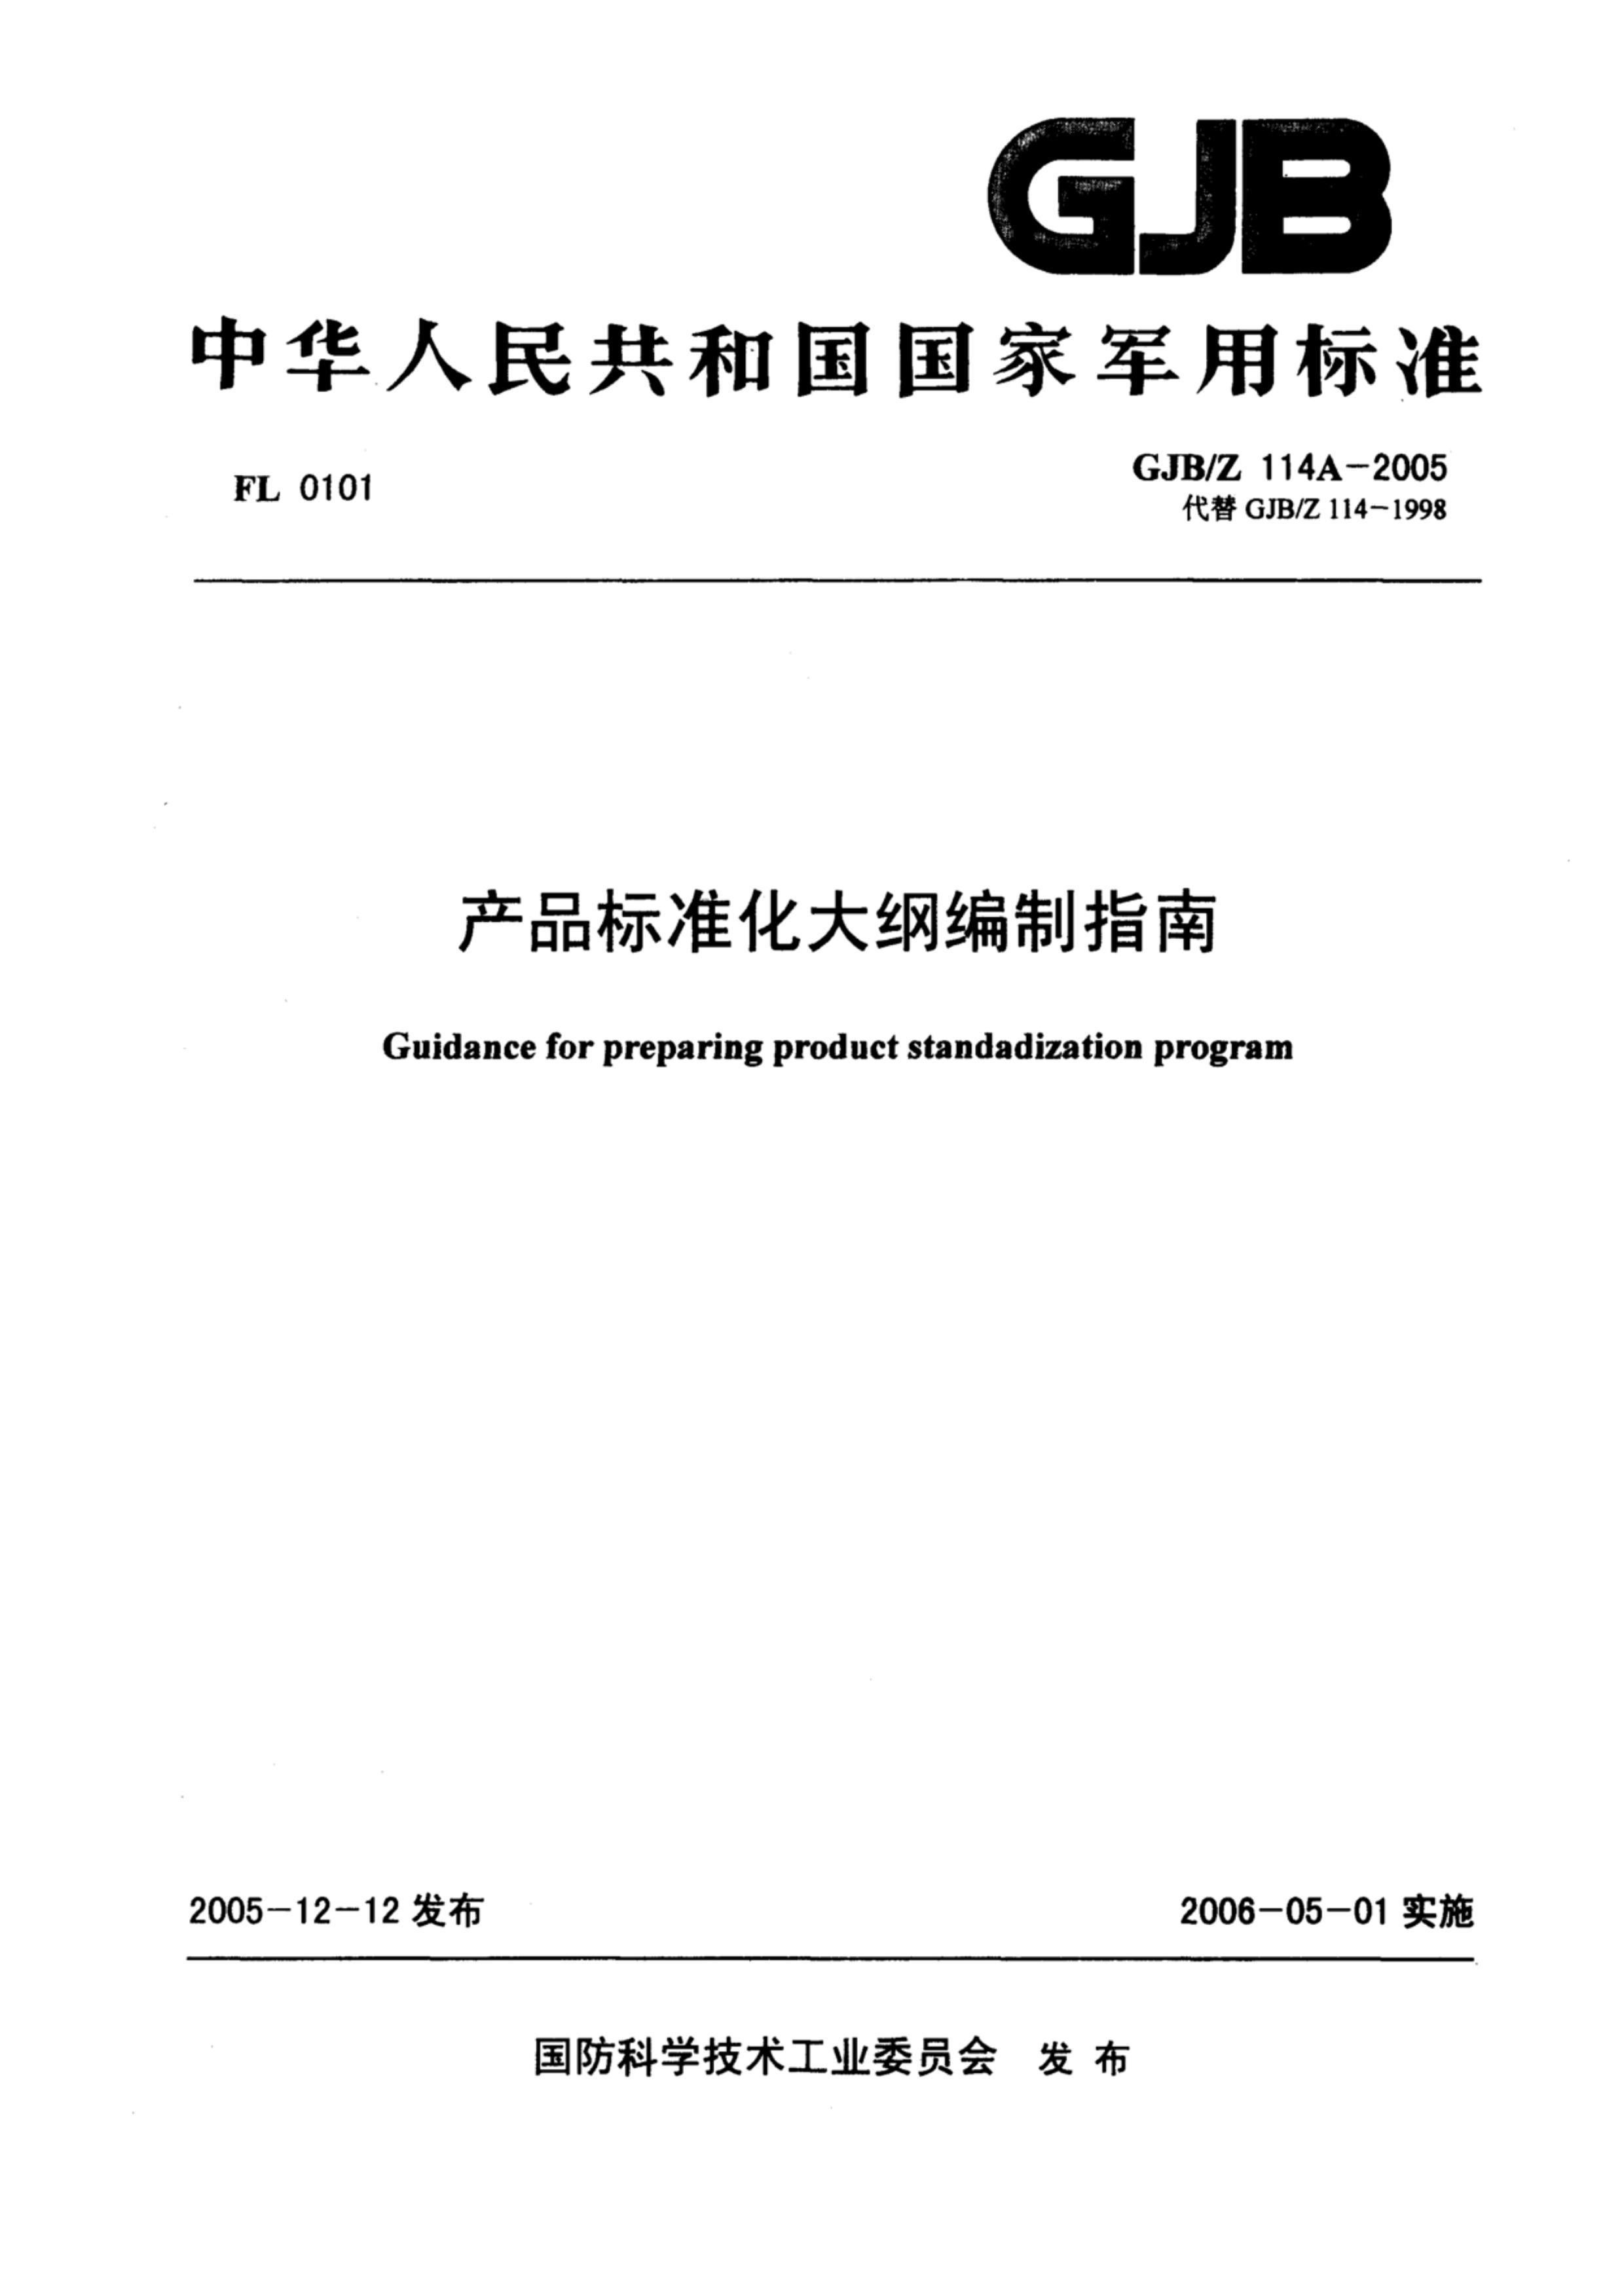 GJBZ 114A-2005.pdf1ҳ